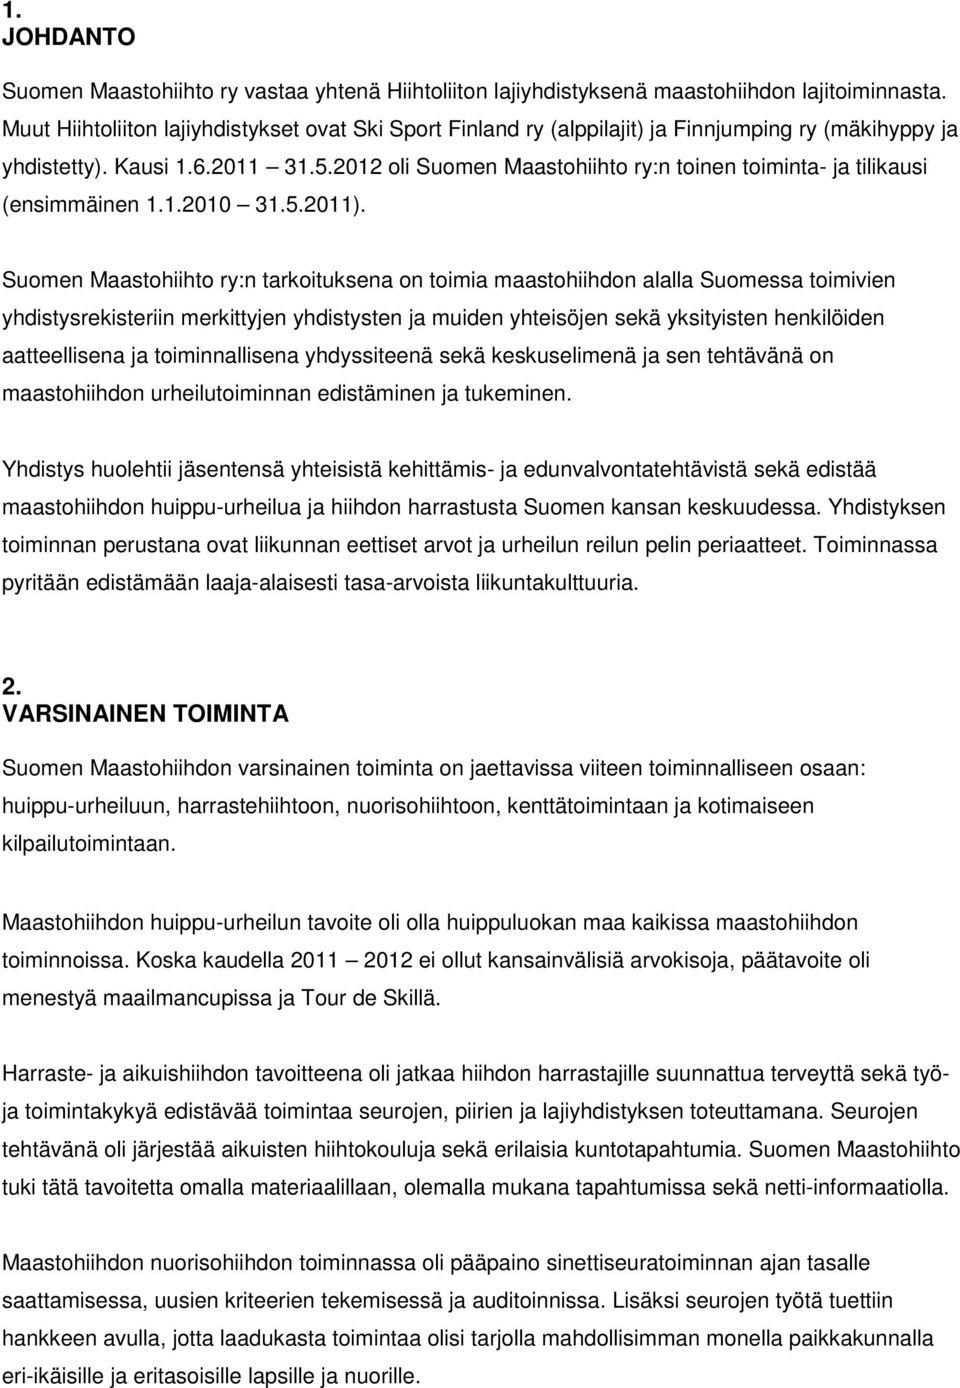 2012 oli Suomen Maastohiihto ry:n toinen toiminta- ja tilikausi (ensimmäinen 1.1.2010 31.5.2011).